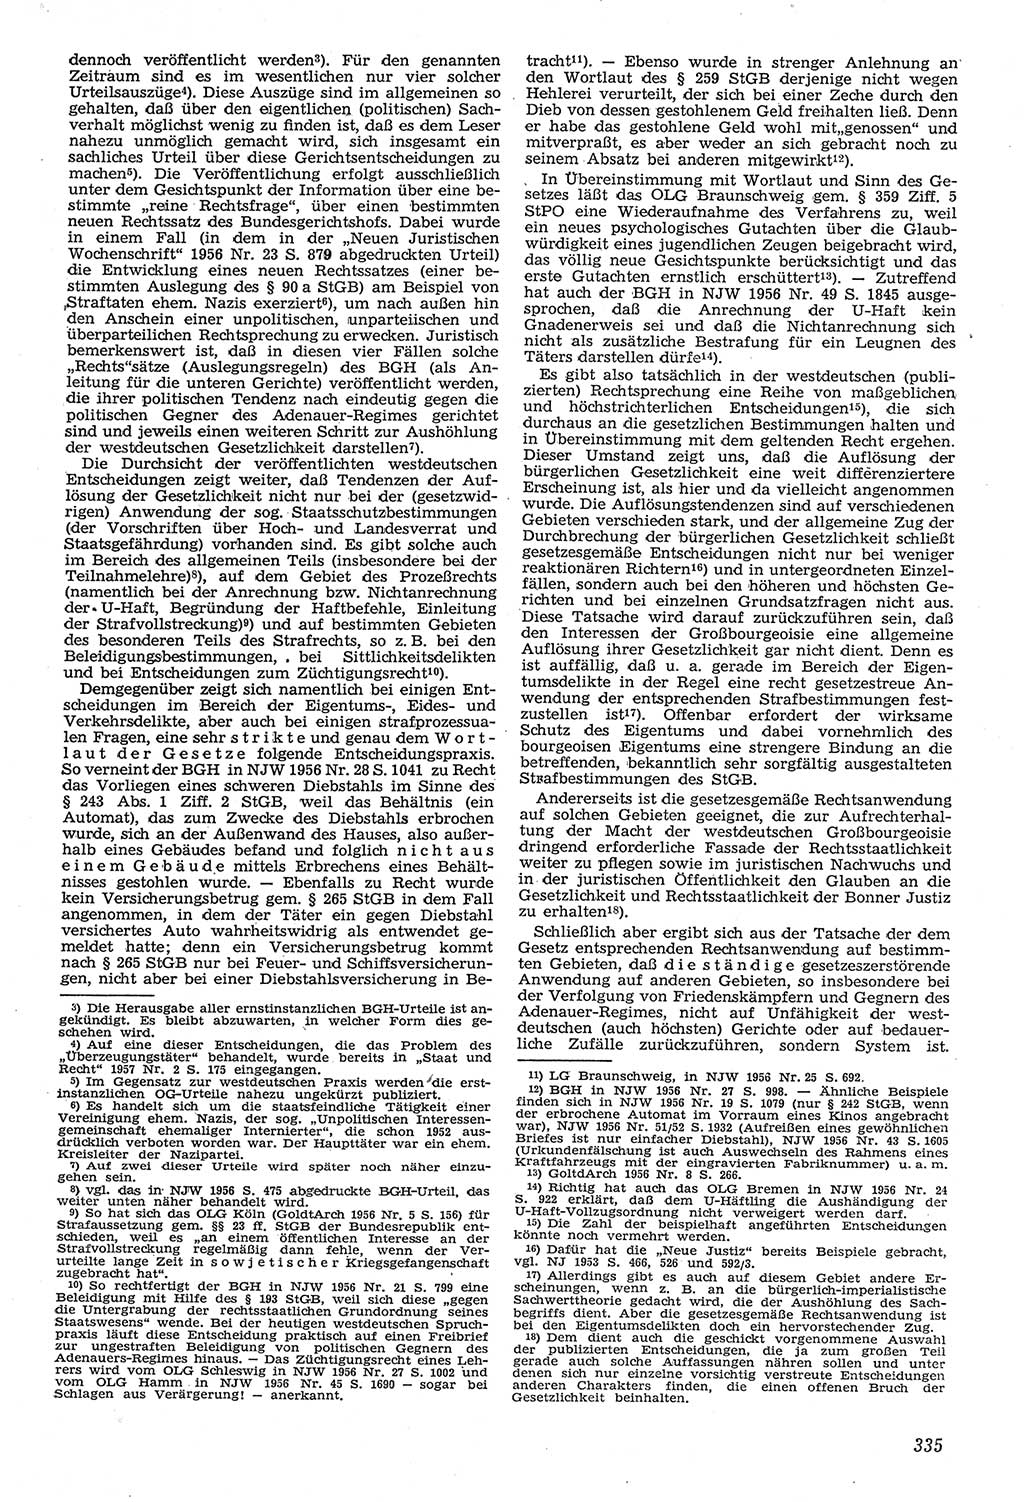 Neue Justiz (NJ), Zeitschrift für Recht und Rechtswissenschaft [Deutsche Demokratische Republik (DDR)], 11. Jahrgang 1957, Seite 335 (NJ DDR 1957, S. 335)